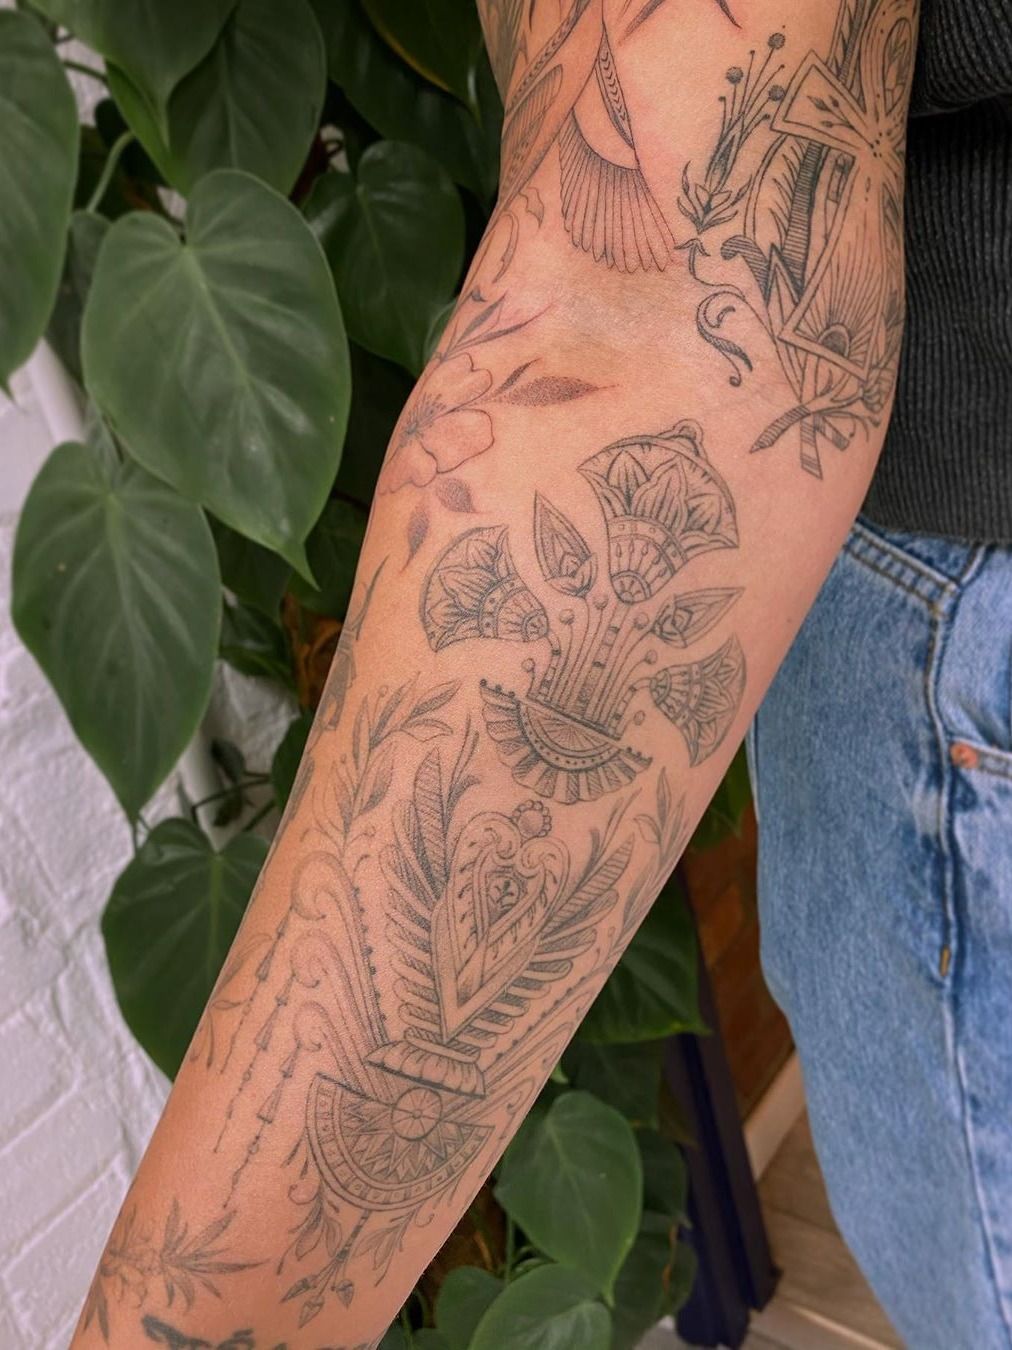 31 Tribal Tattoo Designs | Best Tribal Tattoos | Black Tribal Tattoo Designs